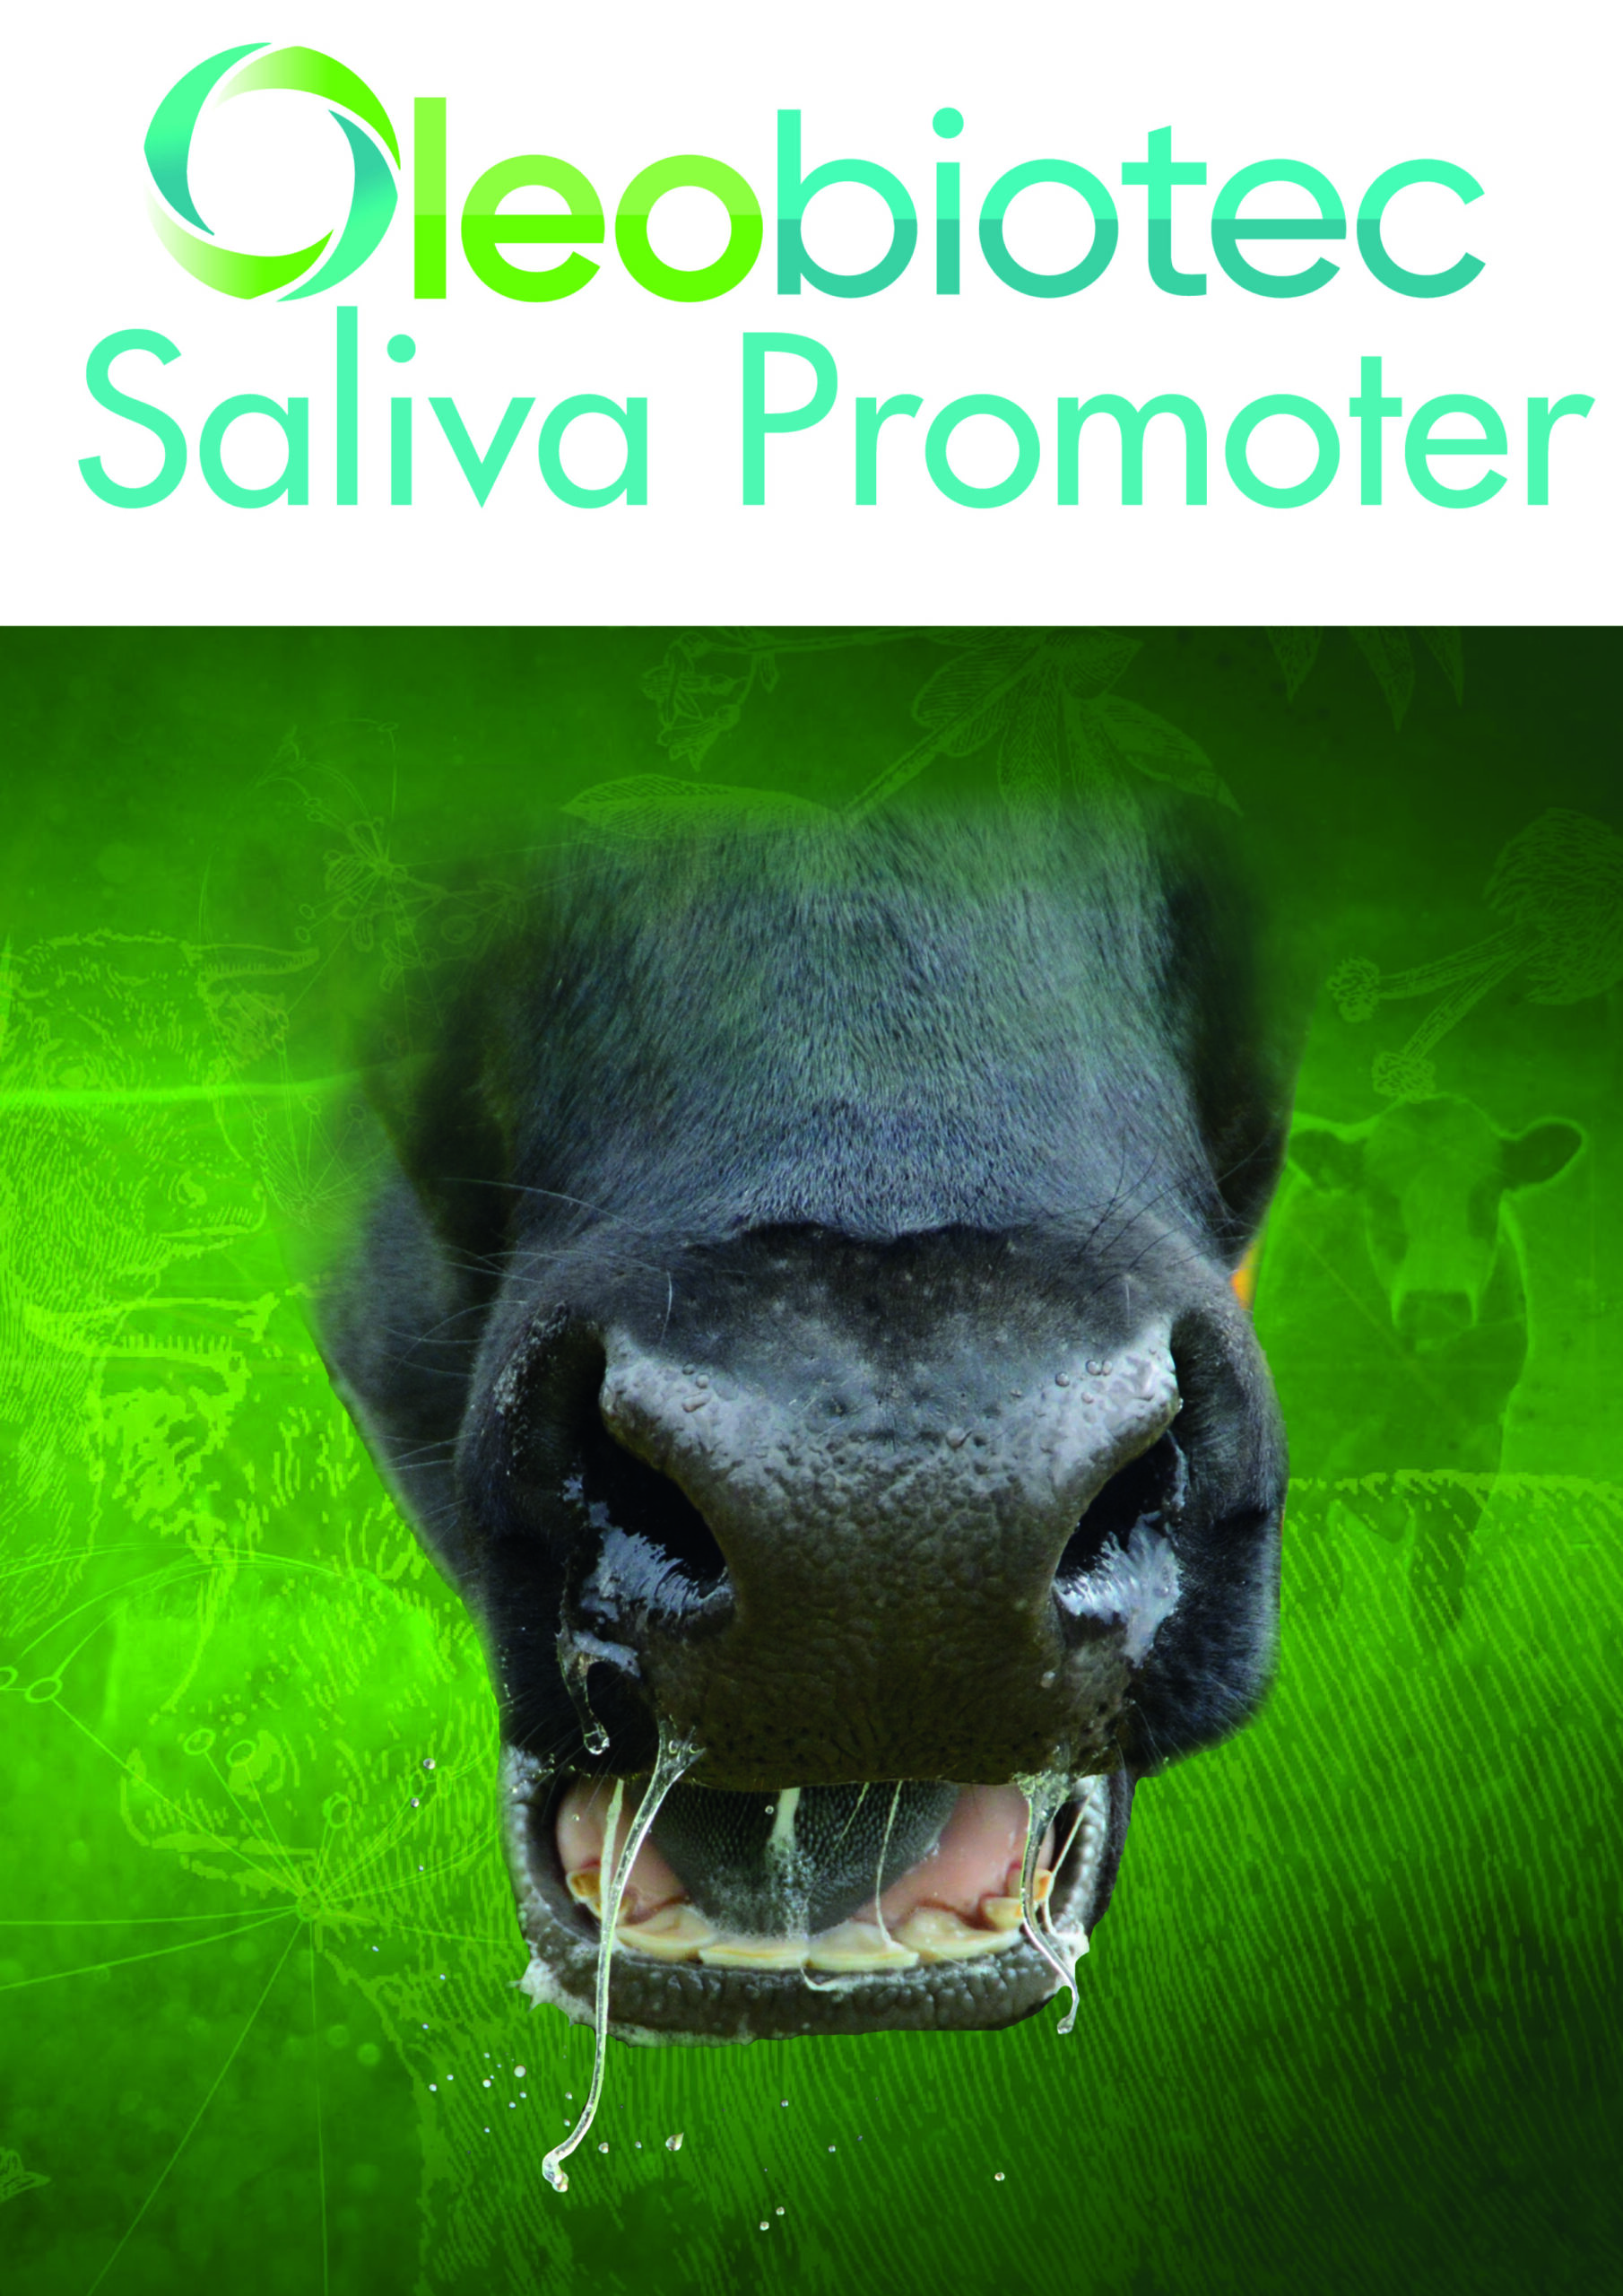 Oleobiotec saliva promoter